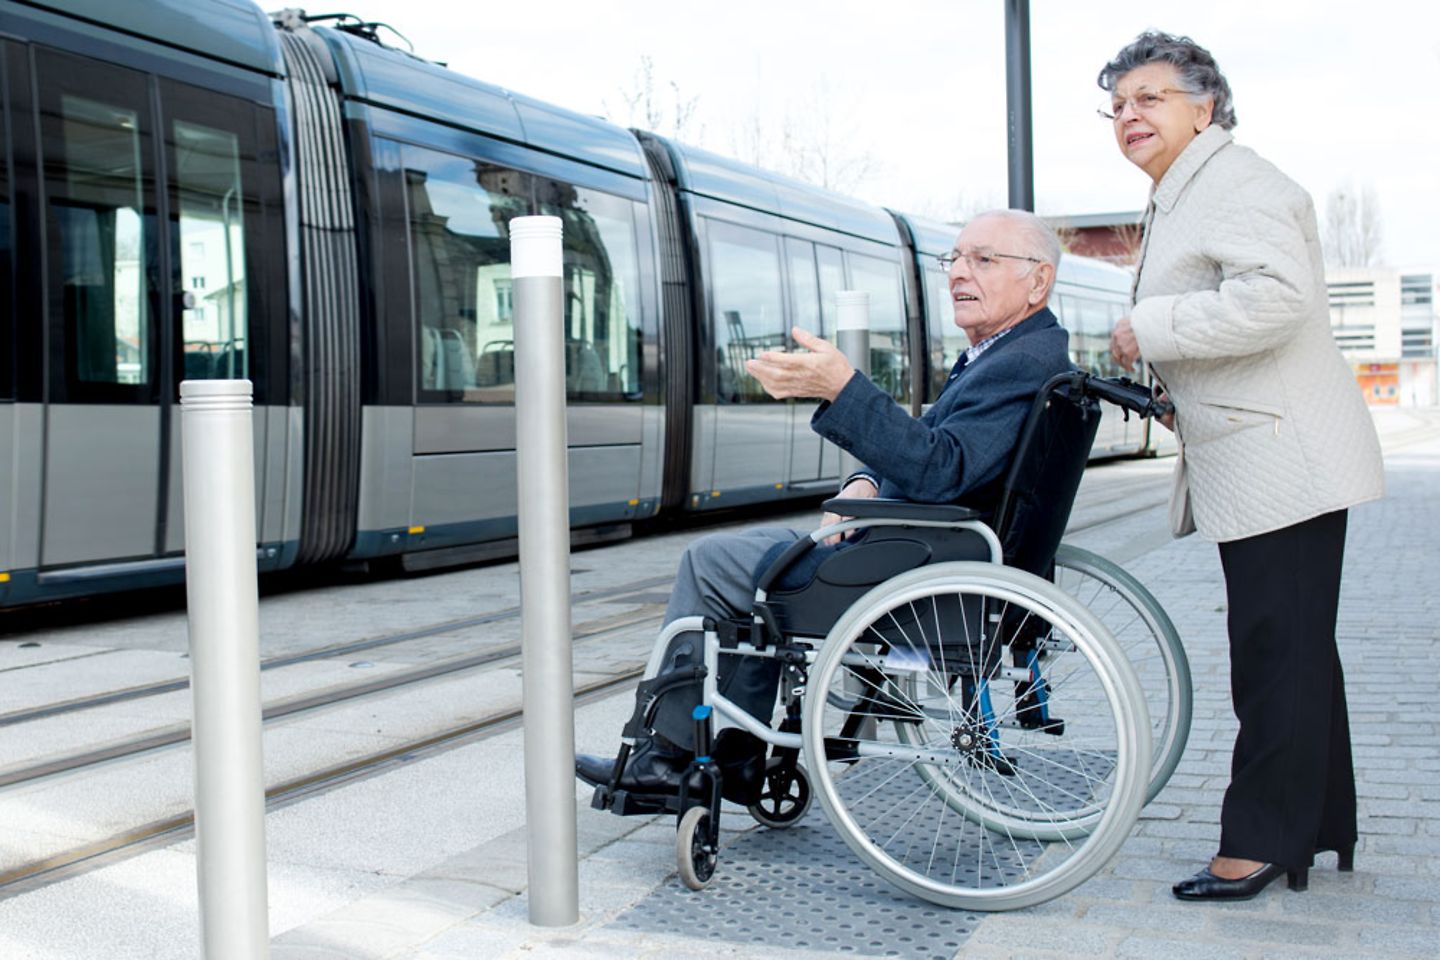 Pareja de ancianos esperando el tren en silla de ruedas, infraestructura de transporte público